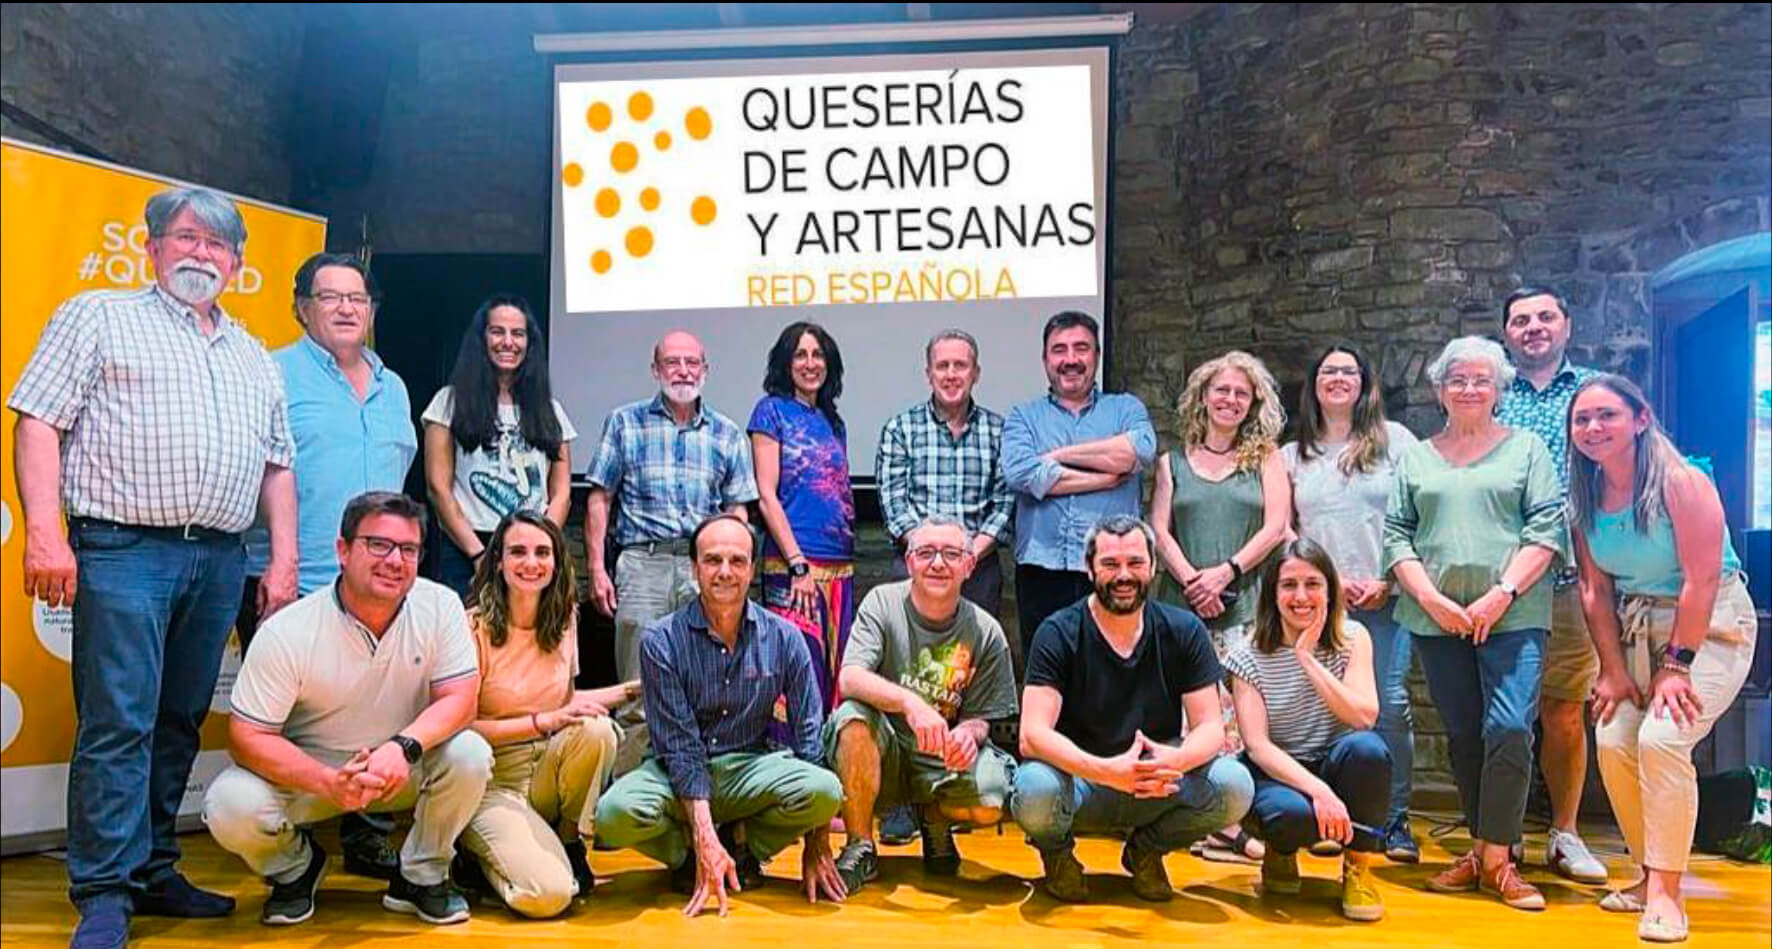 La Asociación Española de Queserías de Campo y Artesanas, Quered, celebra su asamblea general